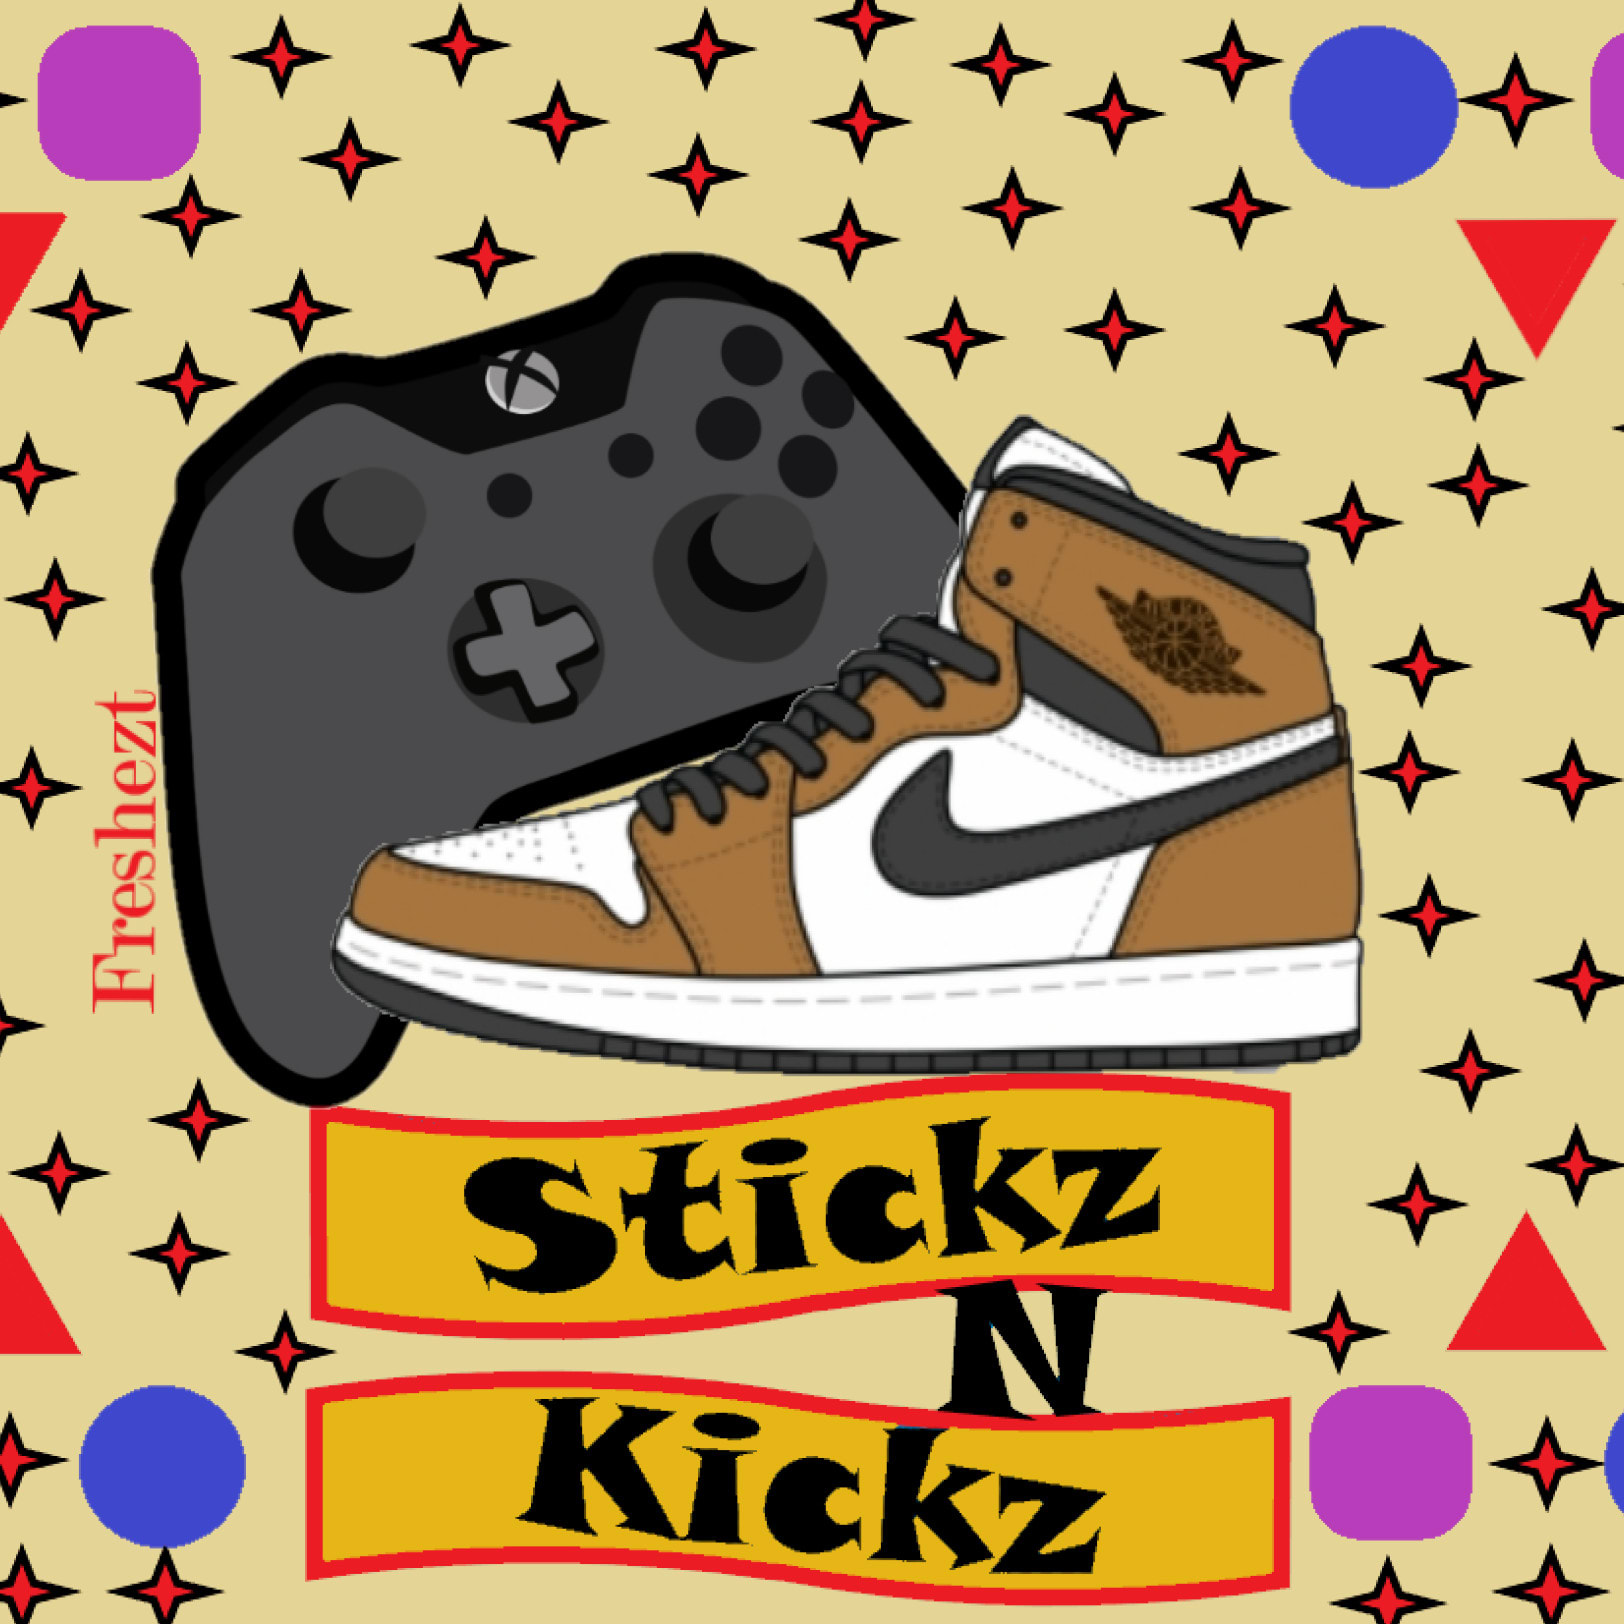 Stickz N Kickz